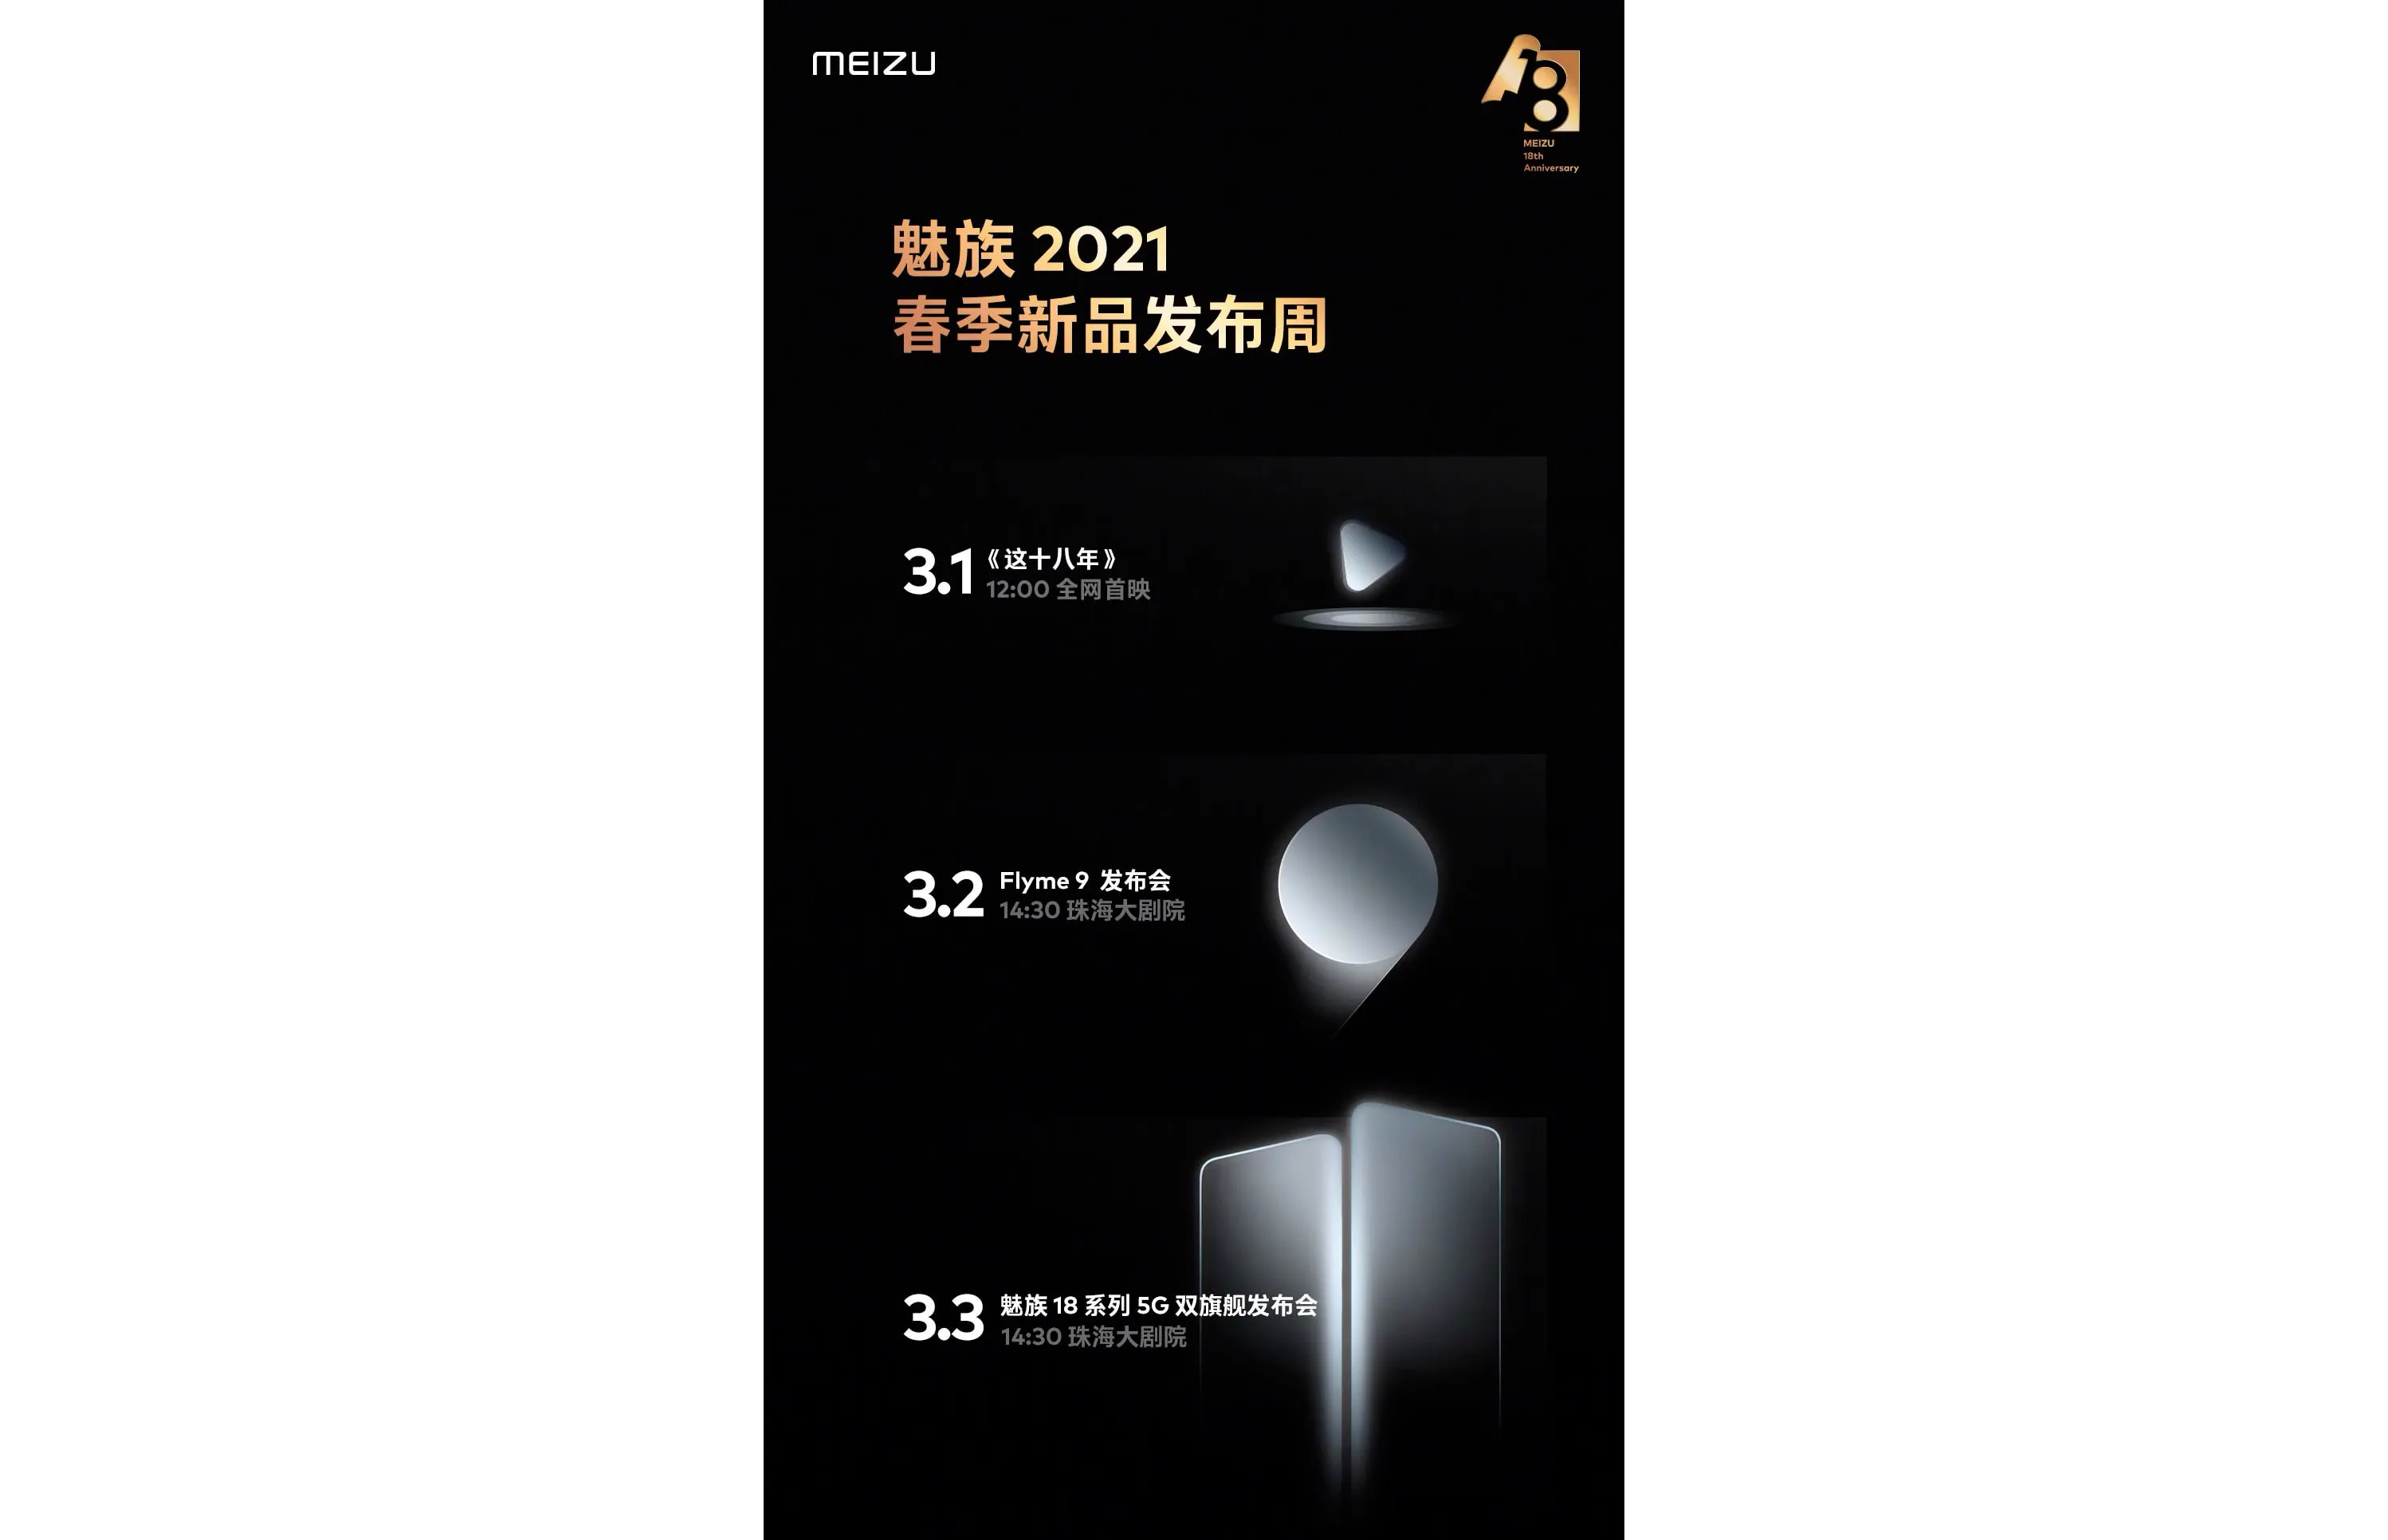 Смартфоны серии Meizu 18 будут представлены 3 марта